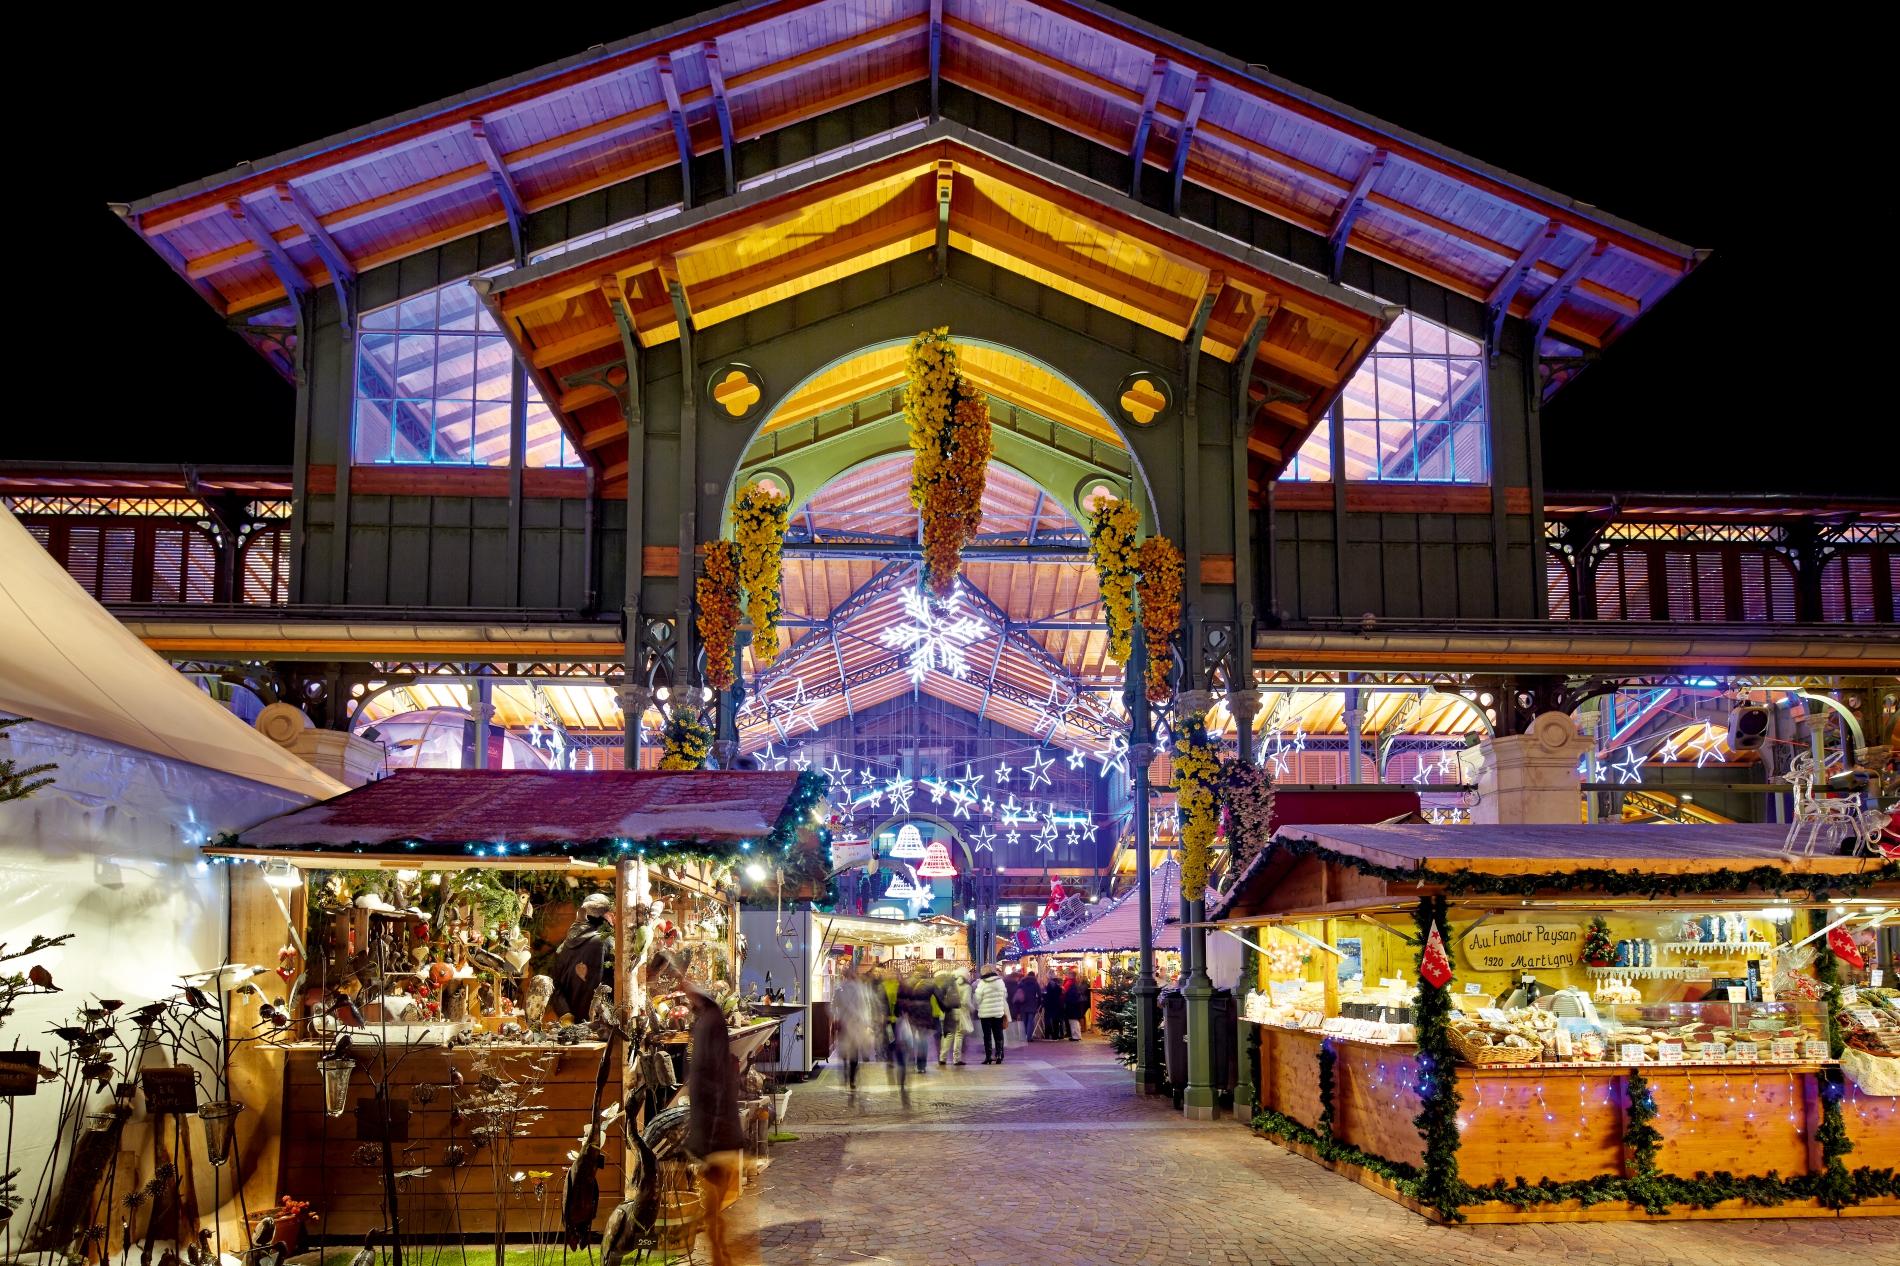 The Christmas Market - Montreux Noël